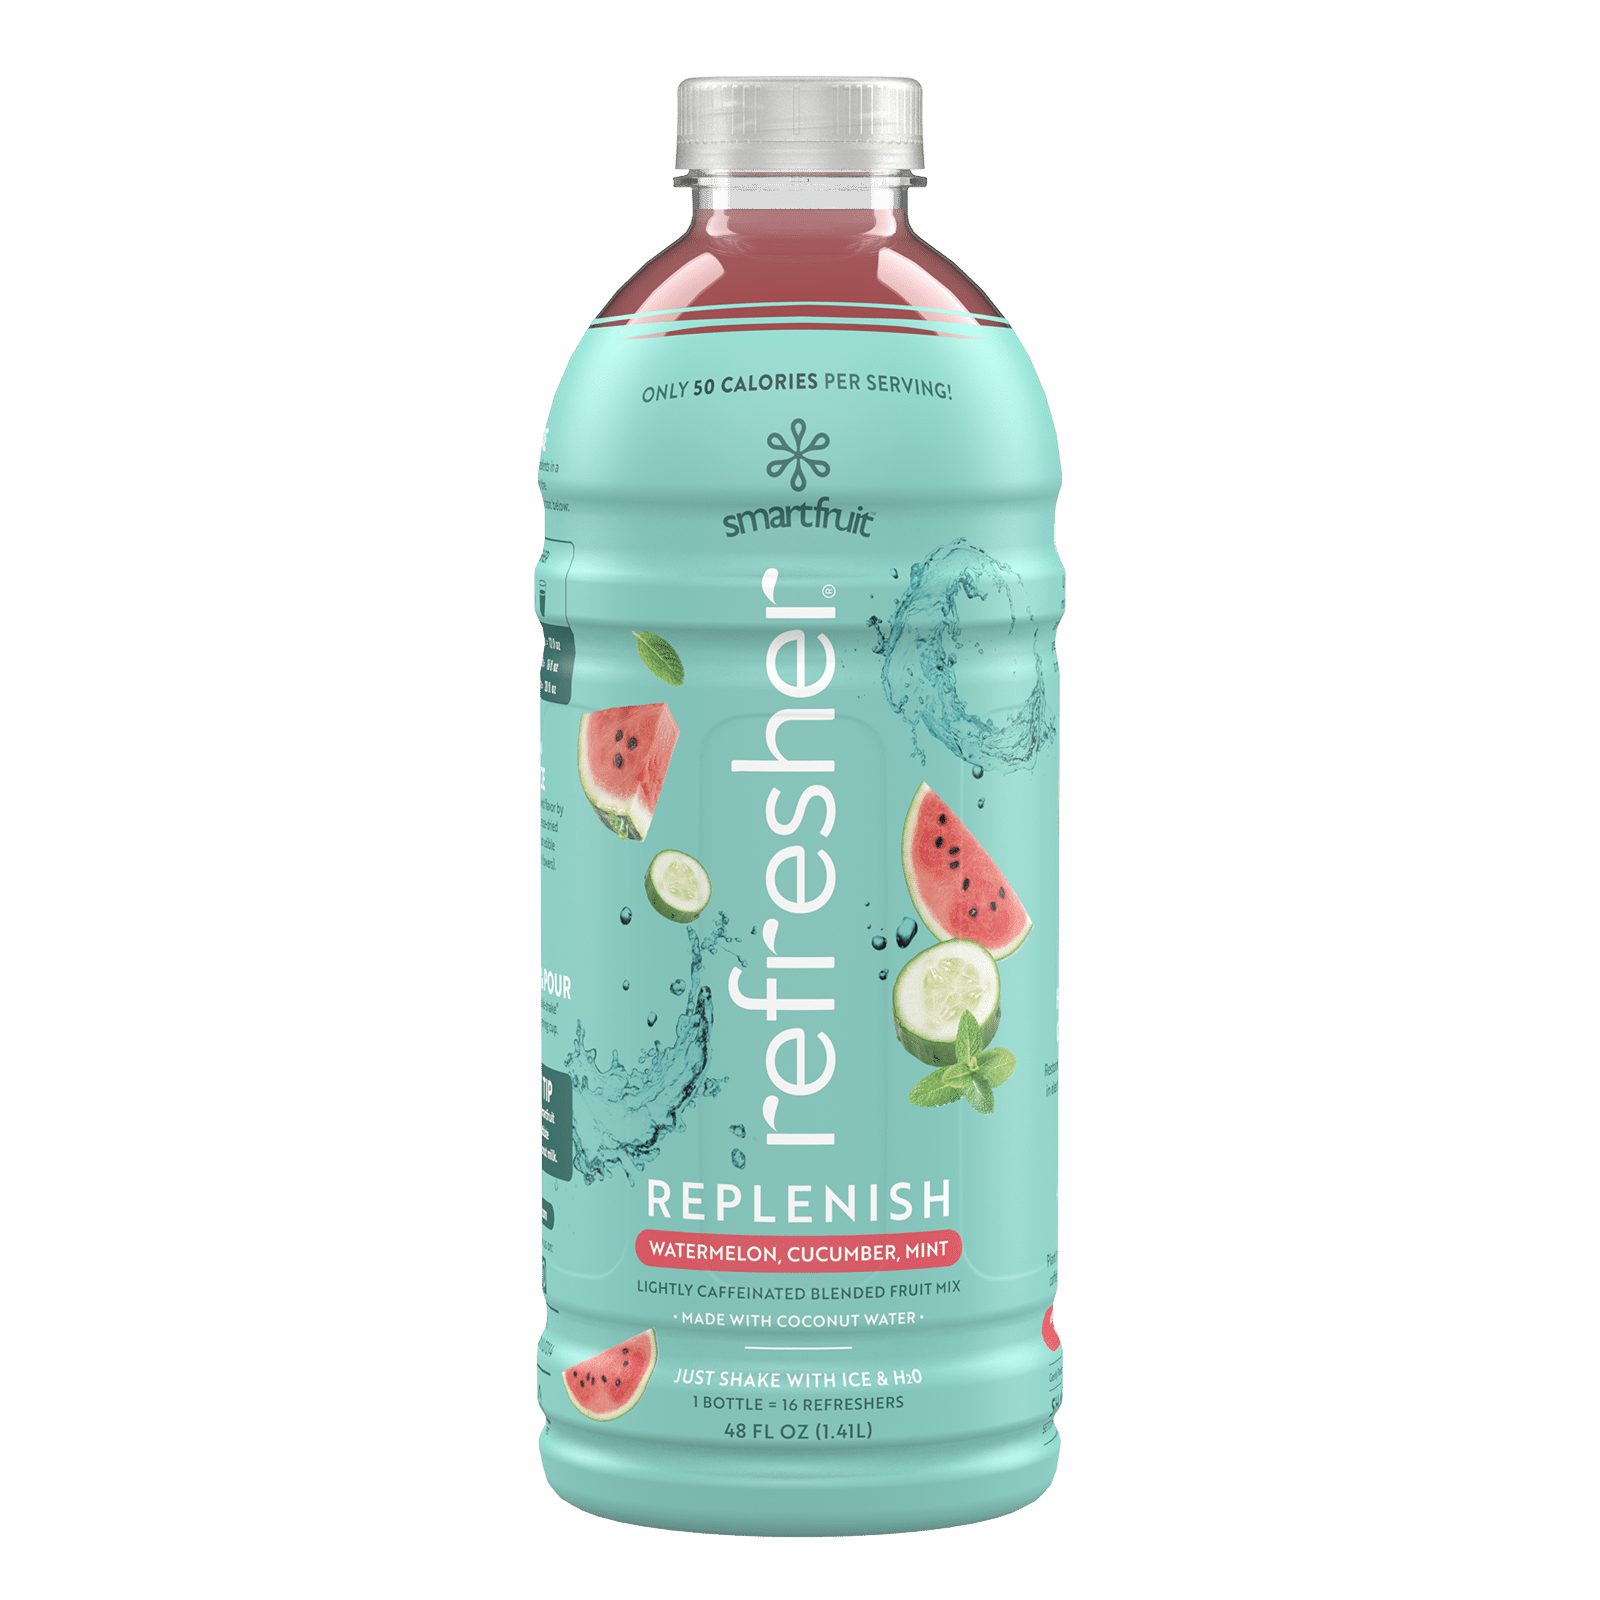 Smartfruit Replenish Refresher bottle